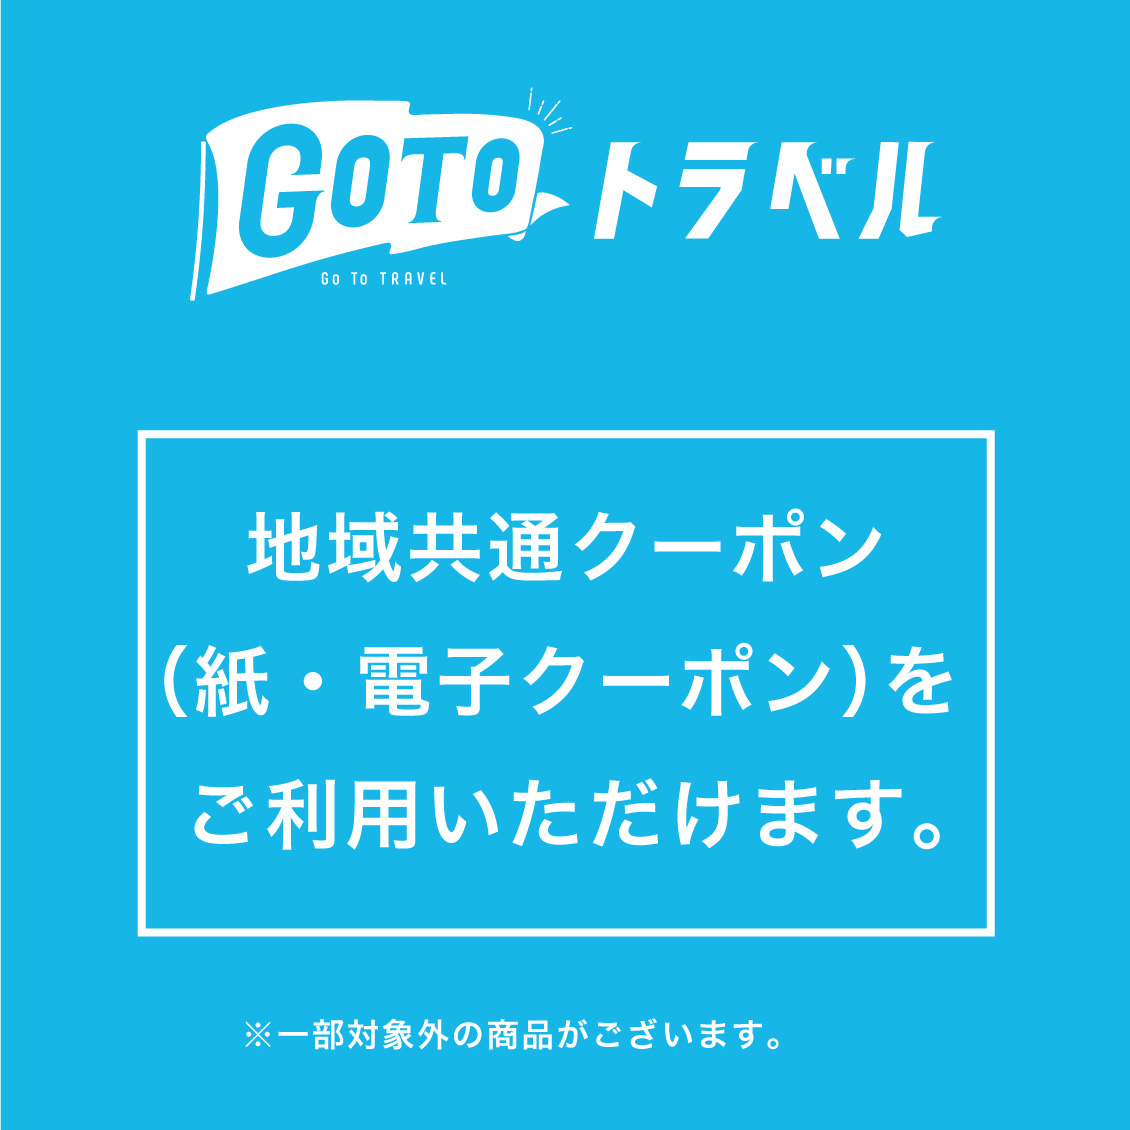 【名古屋モゾワンダーシティ店】GoToトラベル地域共通クーポンのご利用について